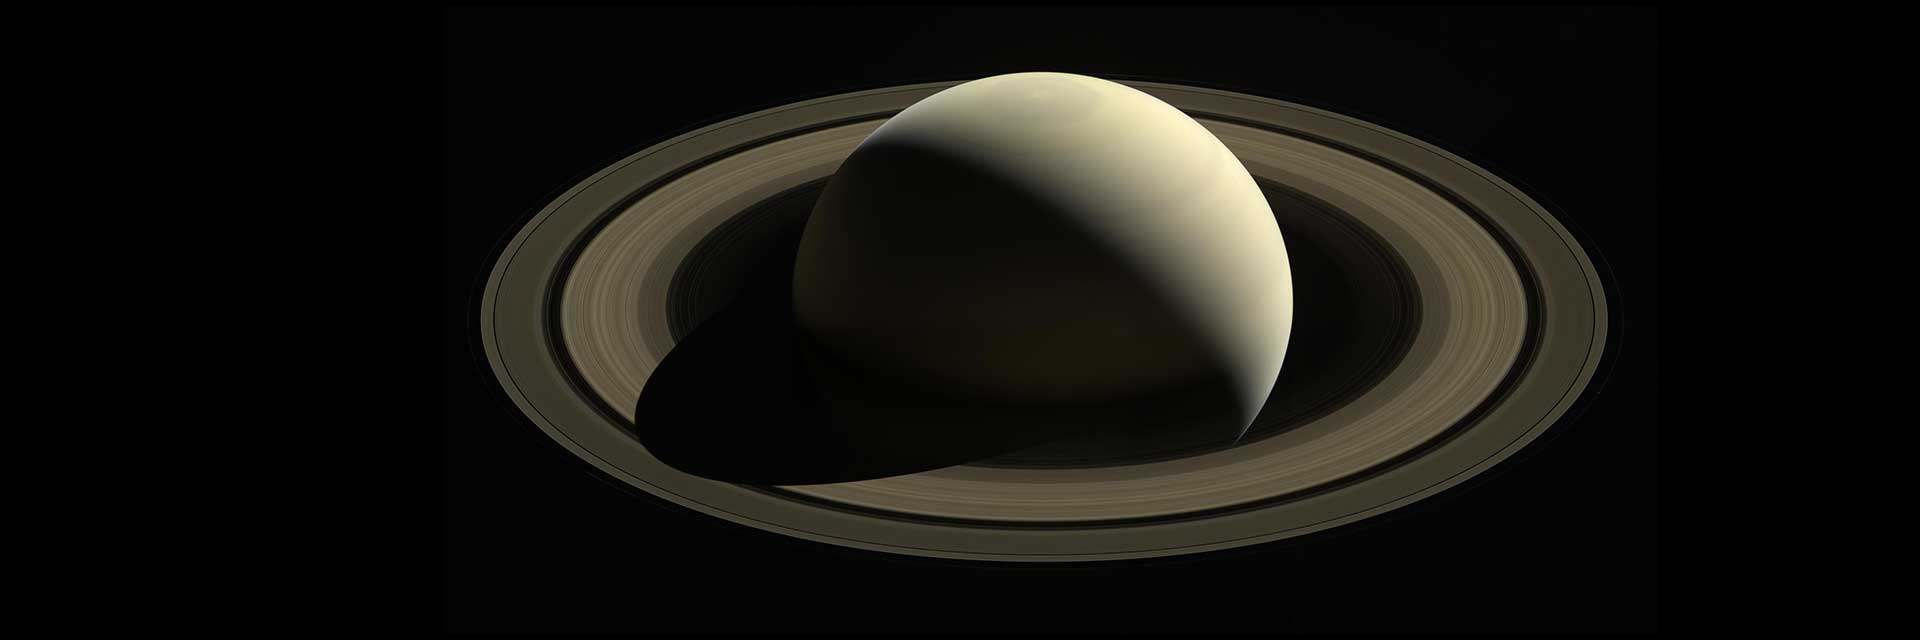 卡西尼号太空船上的土星视图显示了这颗金色行星及其光环。